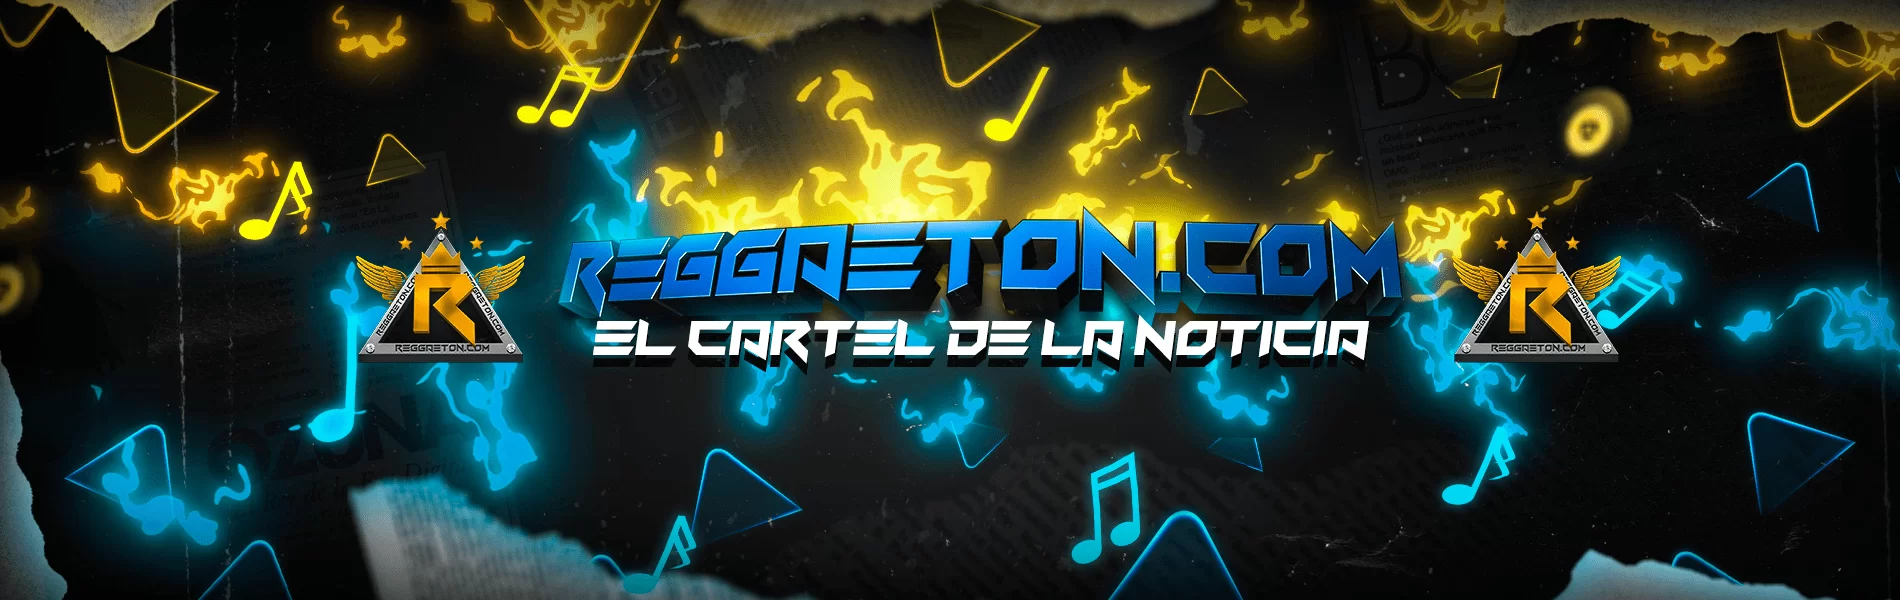 Reggaeton.com